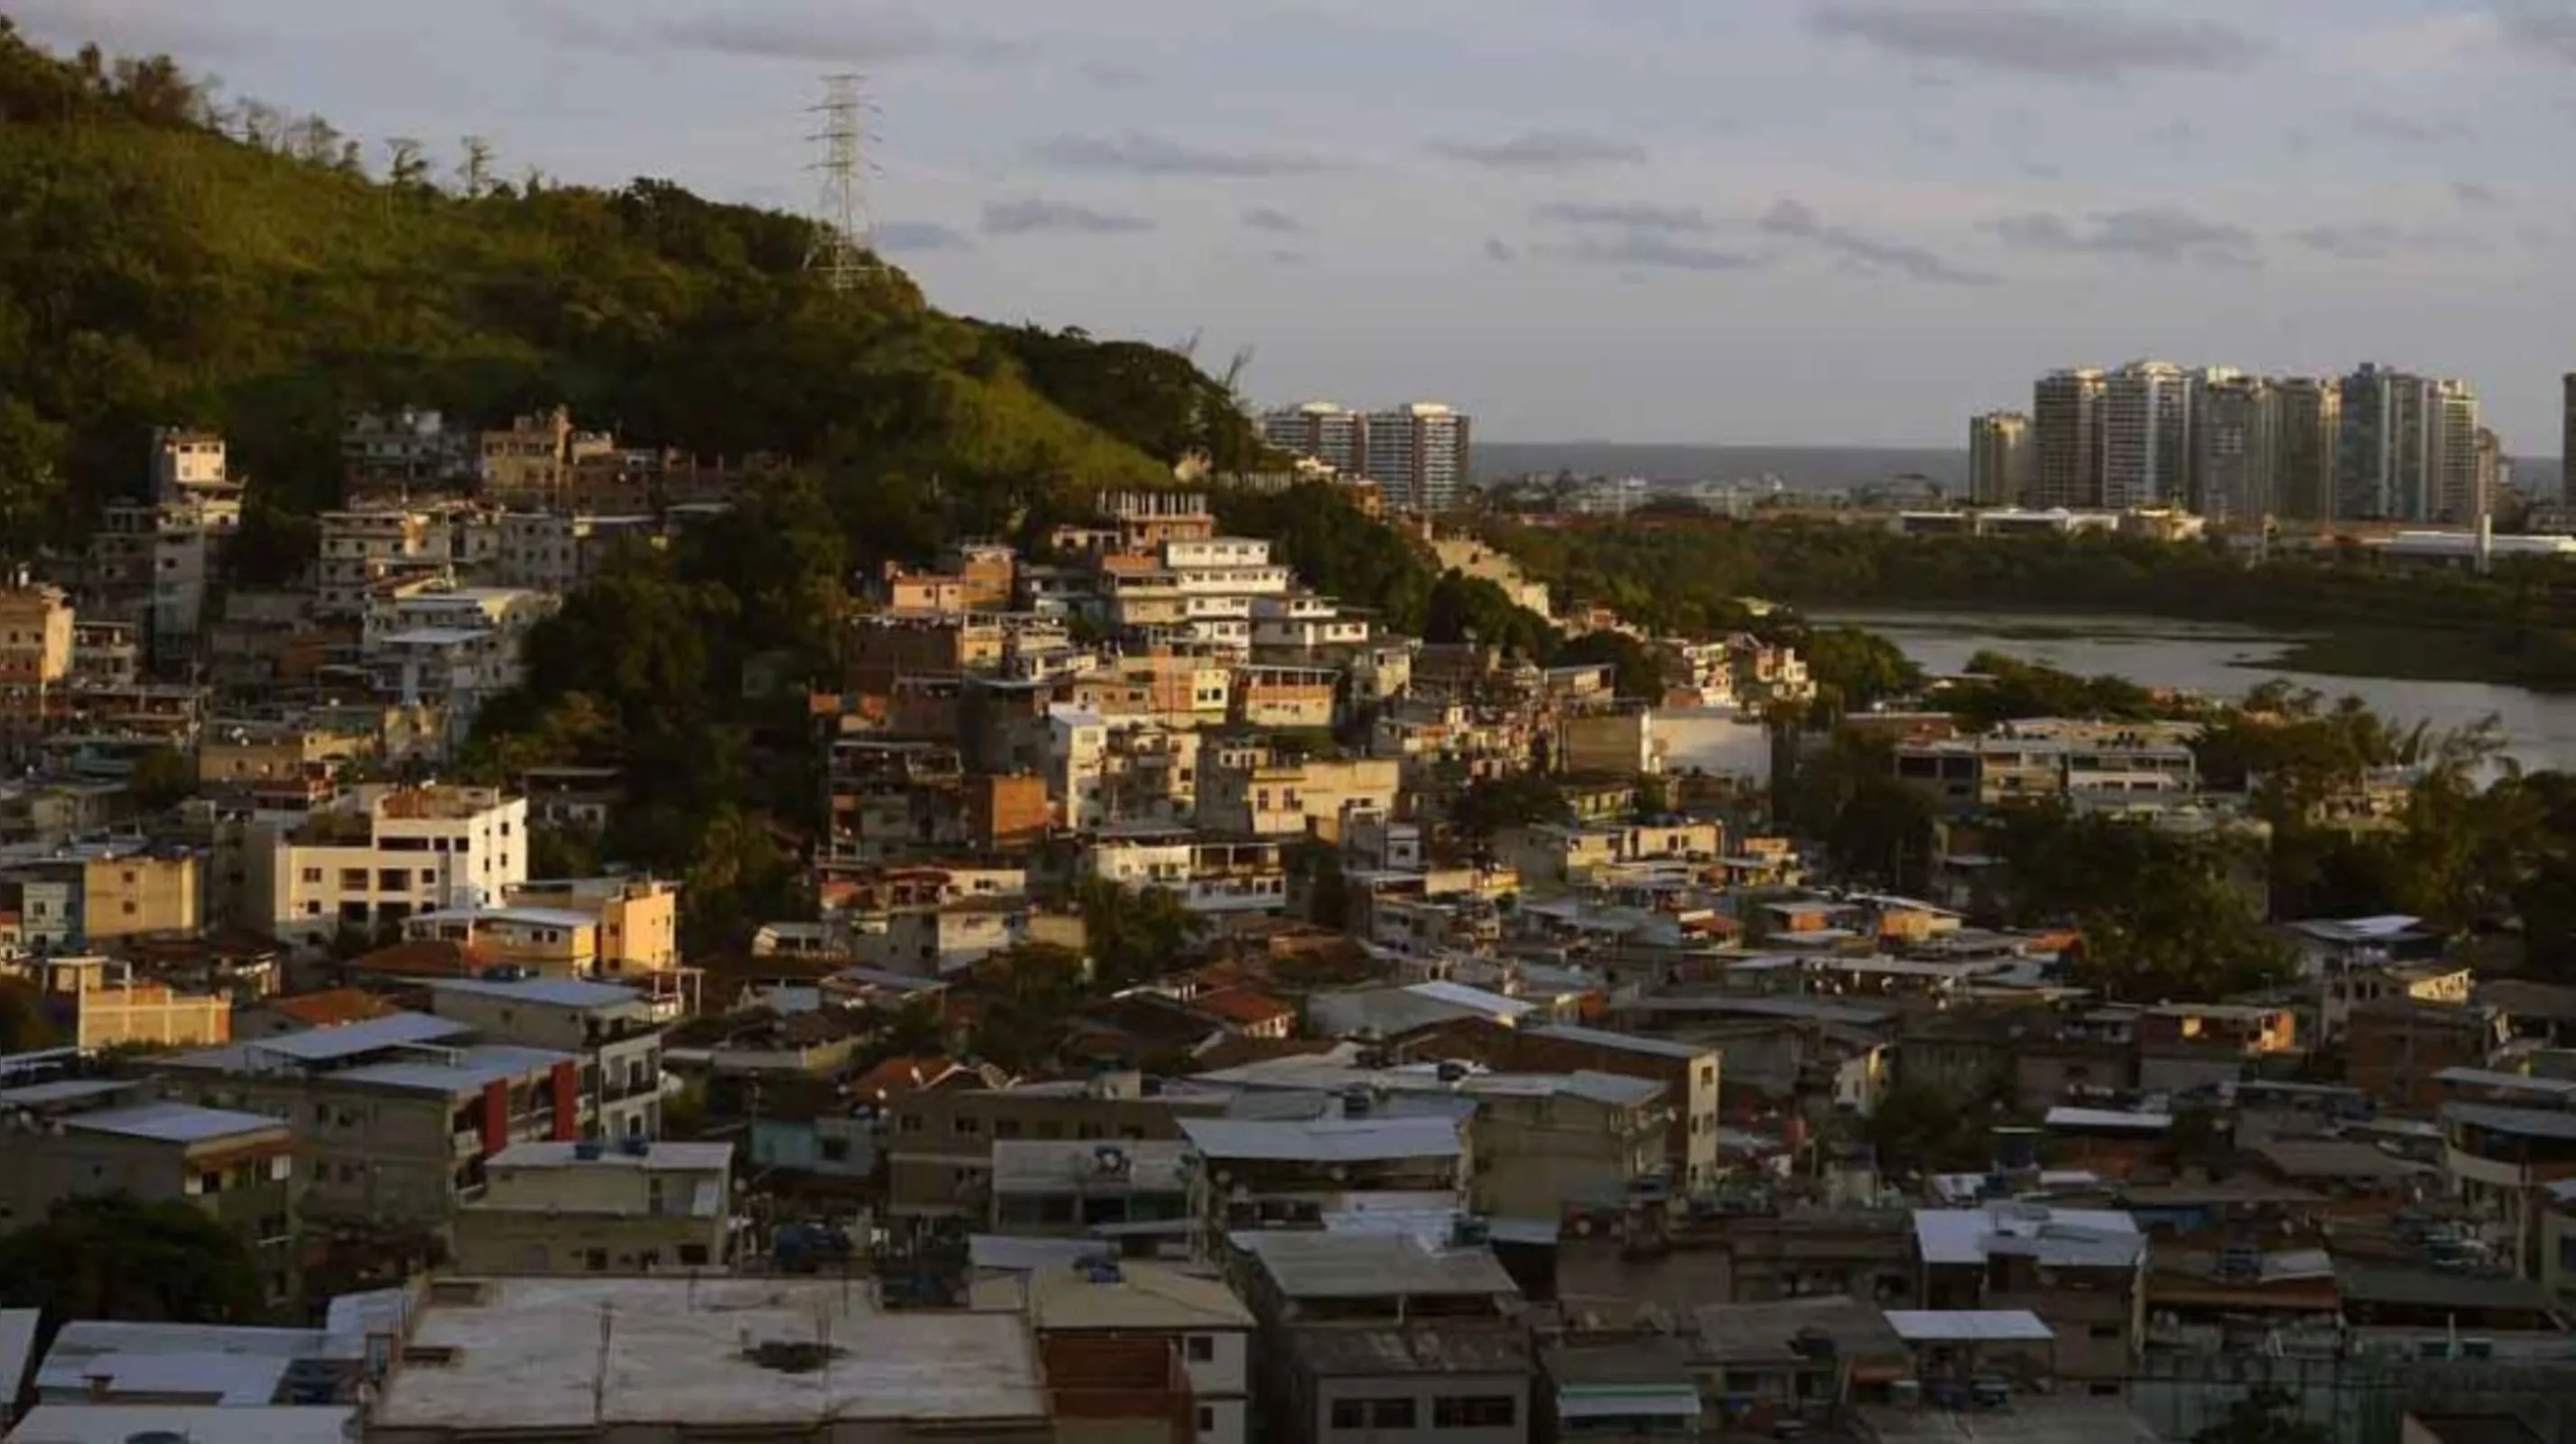 Vista da comunidade da Muzema, na zona oeste da cidade do Rio de Janeiro, onde dois prédios desabaram.